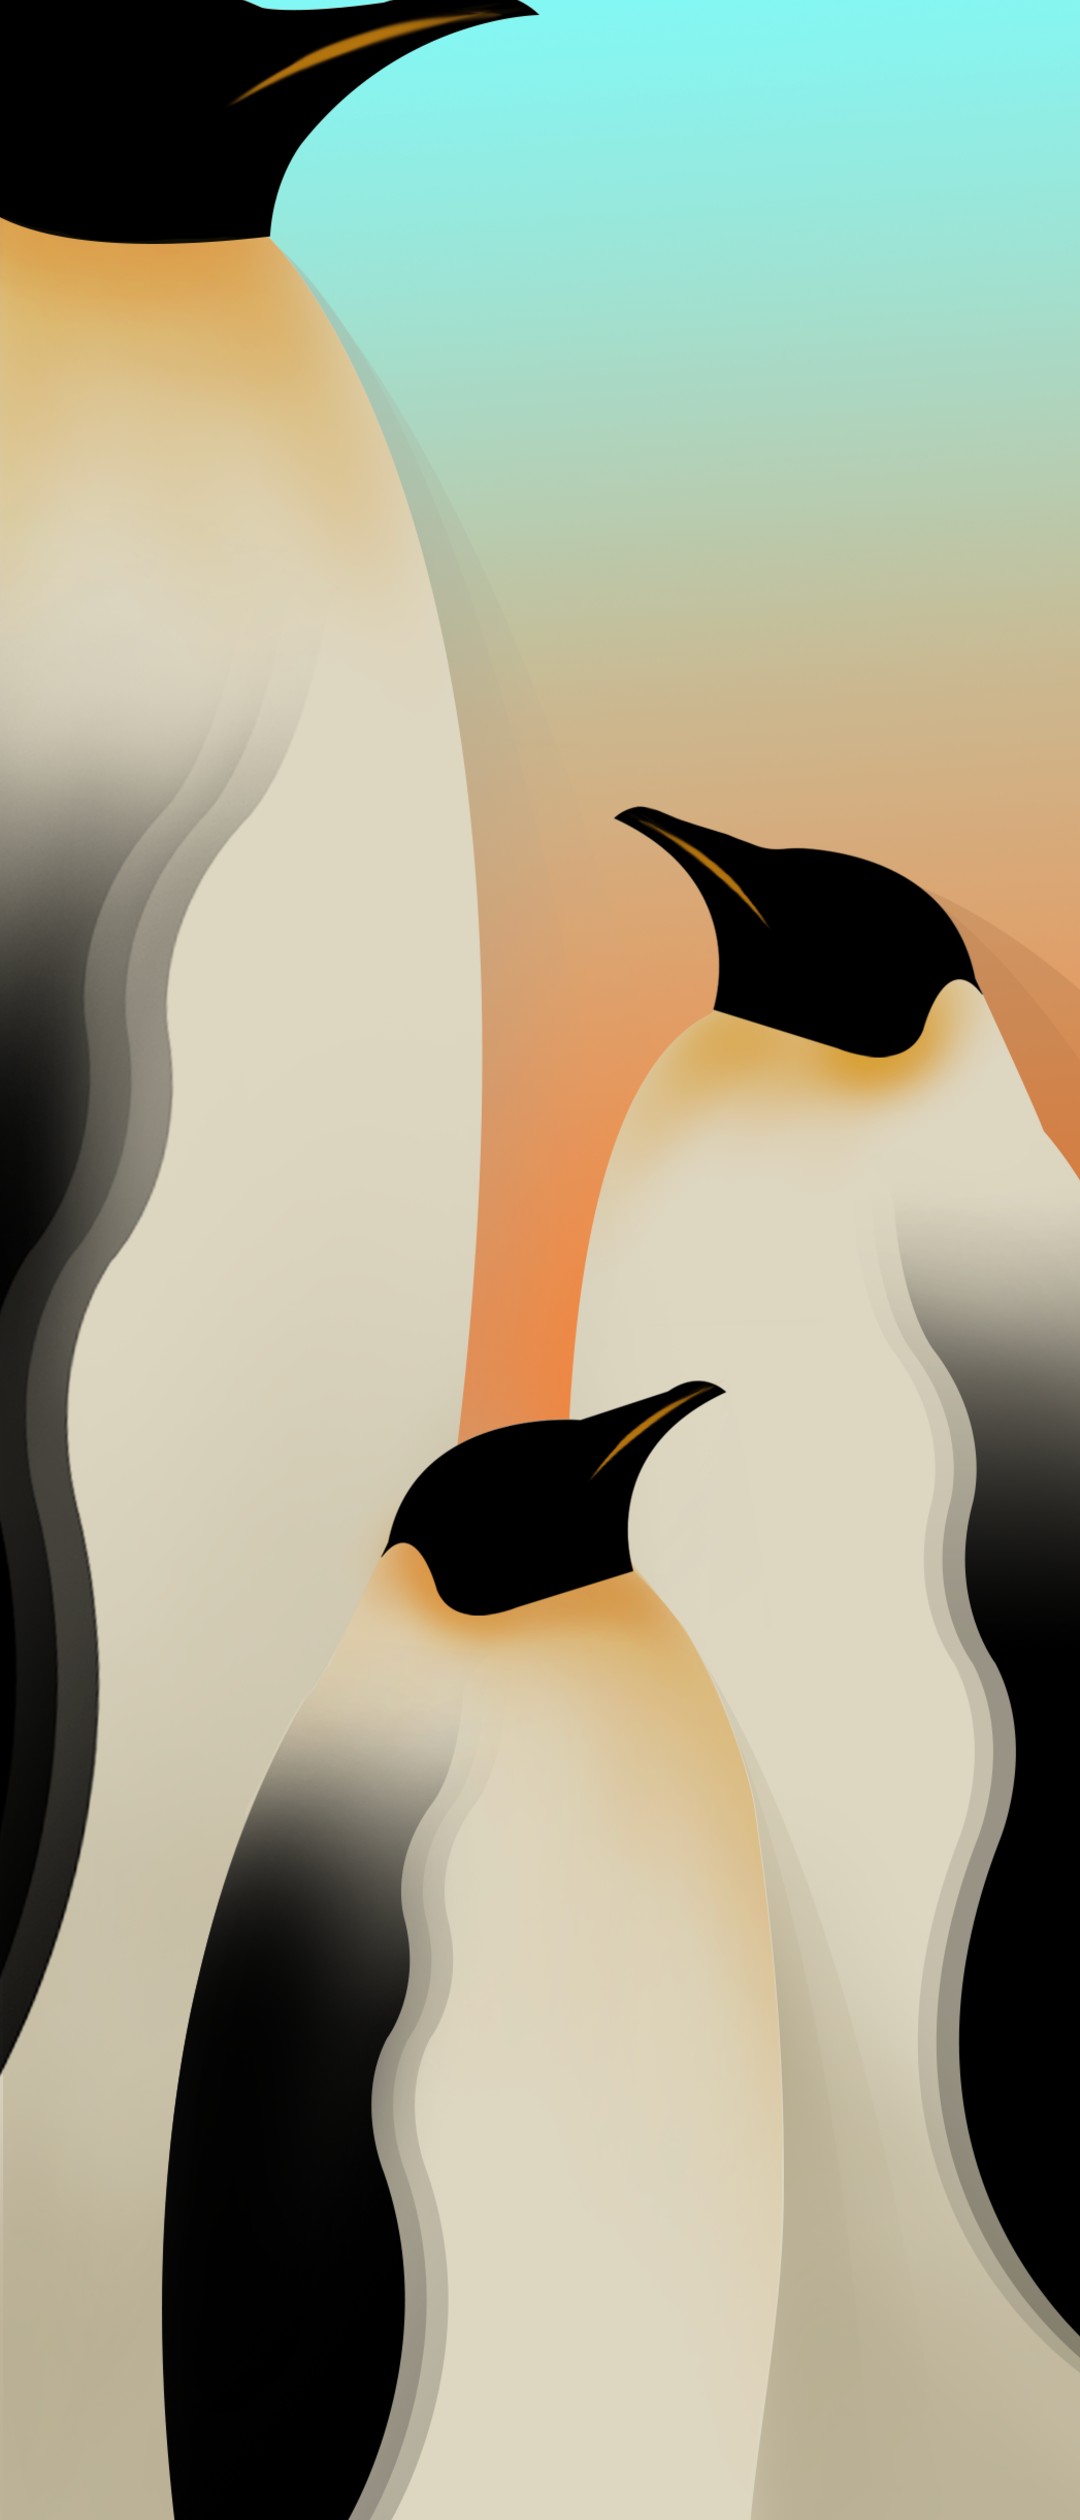 最新 ペンギン 壁紙 イラスト おしゃれ 壁紙 ペンギン イラスト